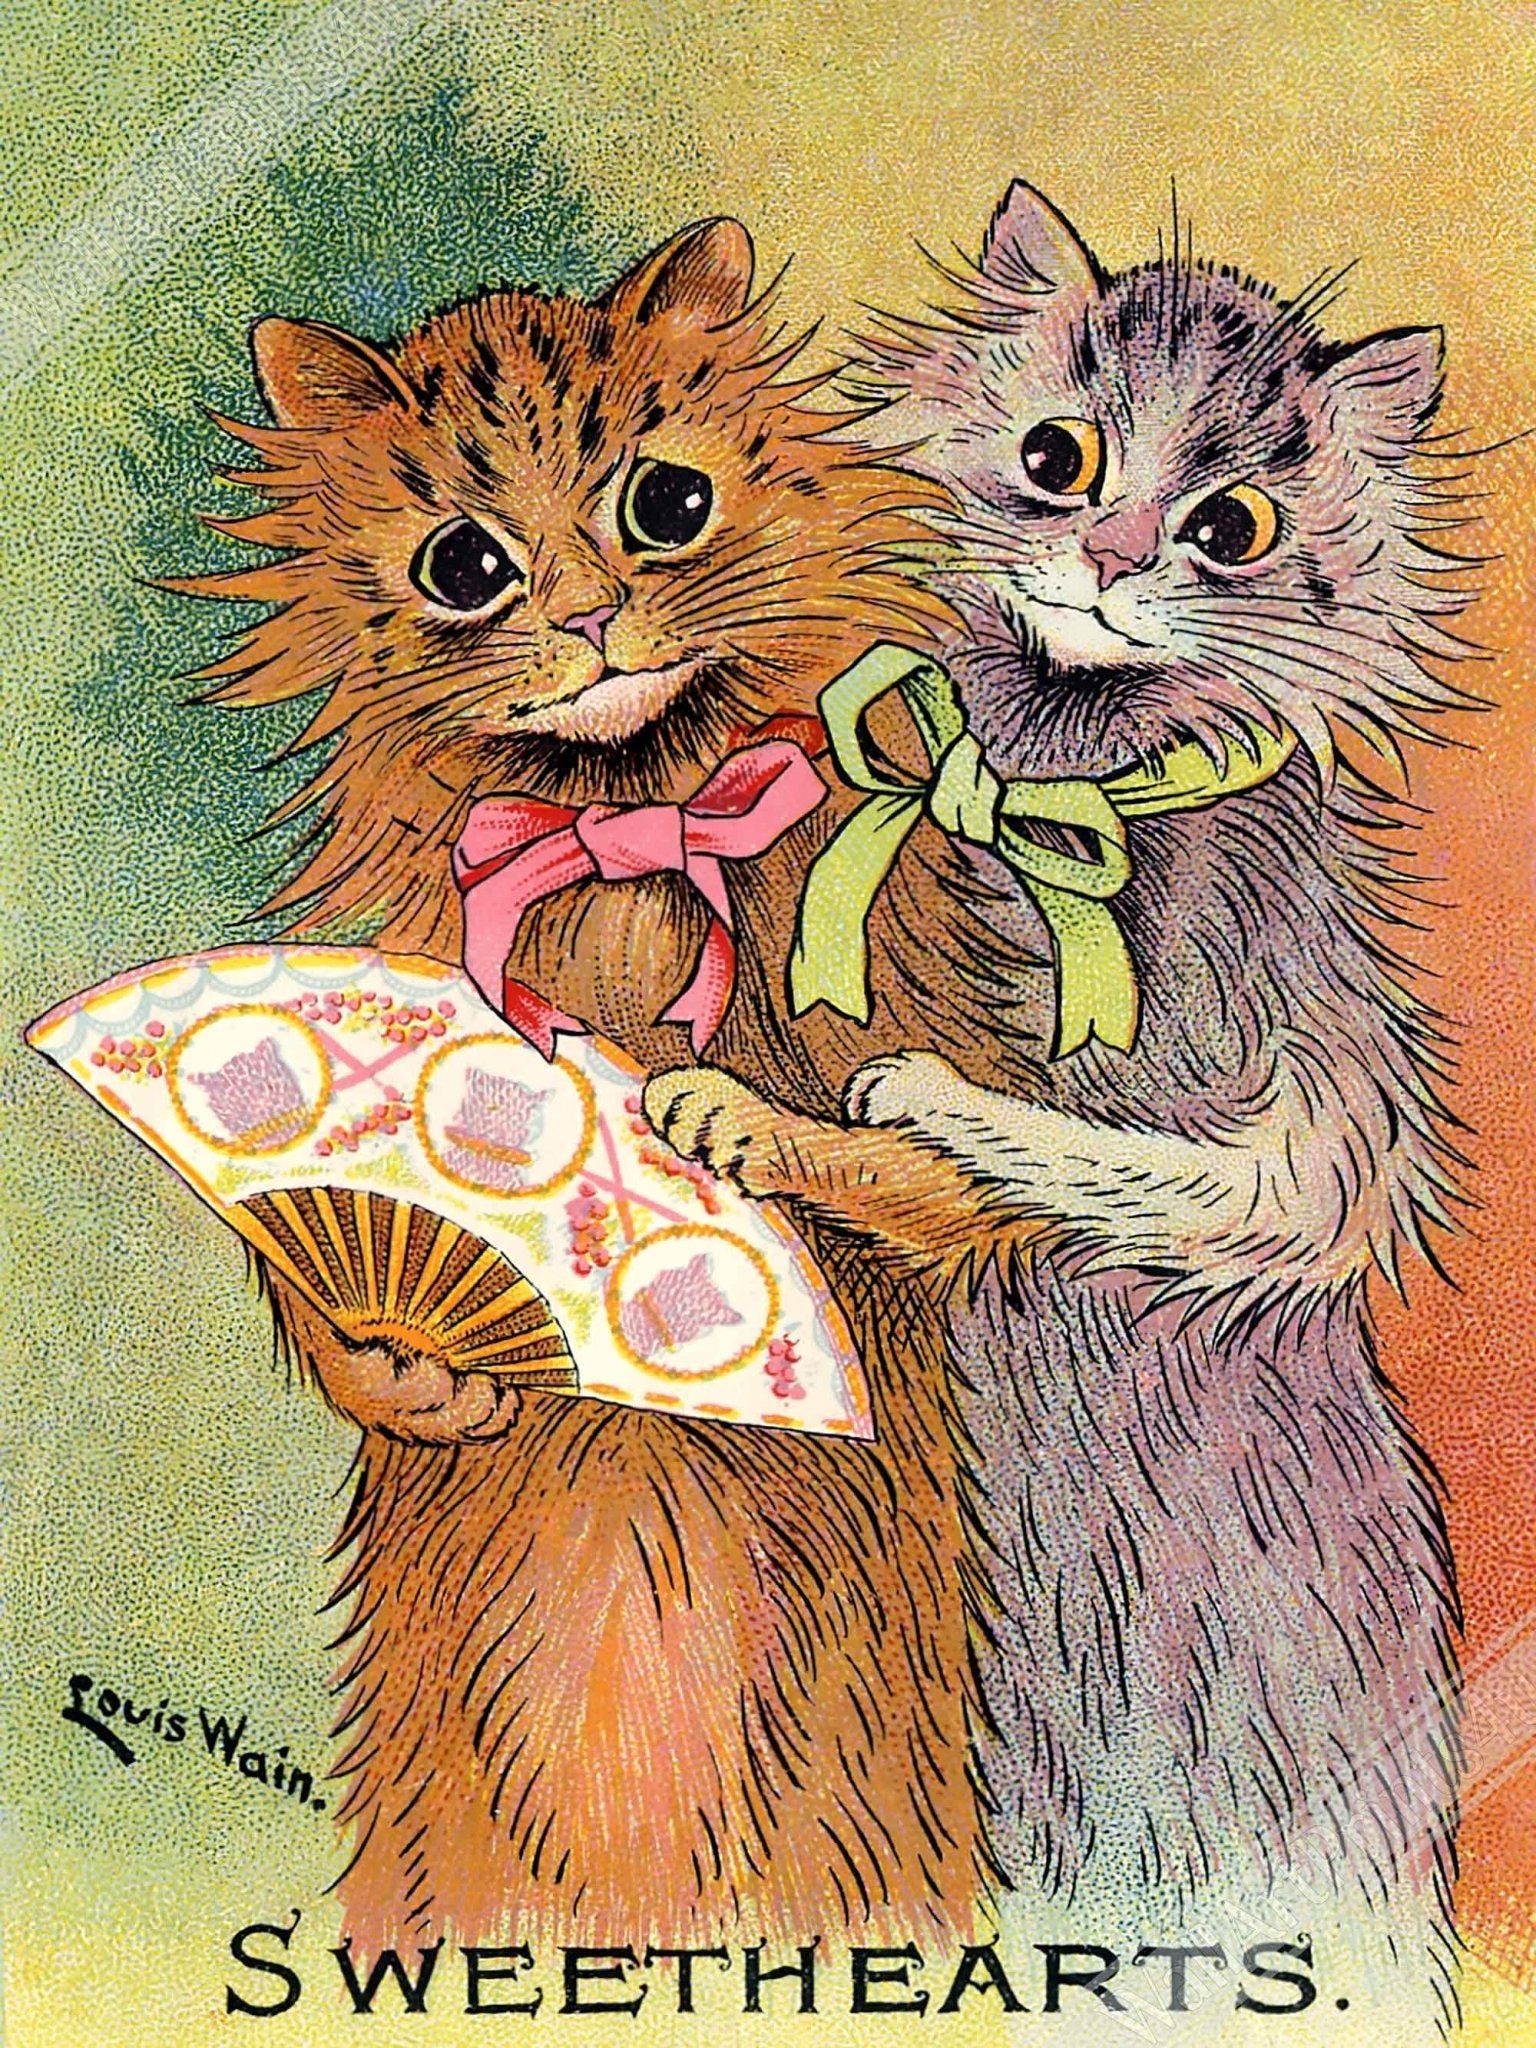 Louis Wain Print - Sweethearts Cats - Louis Wain Cat Poster, Cats With Fan - WallArtPrints4U